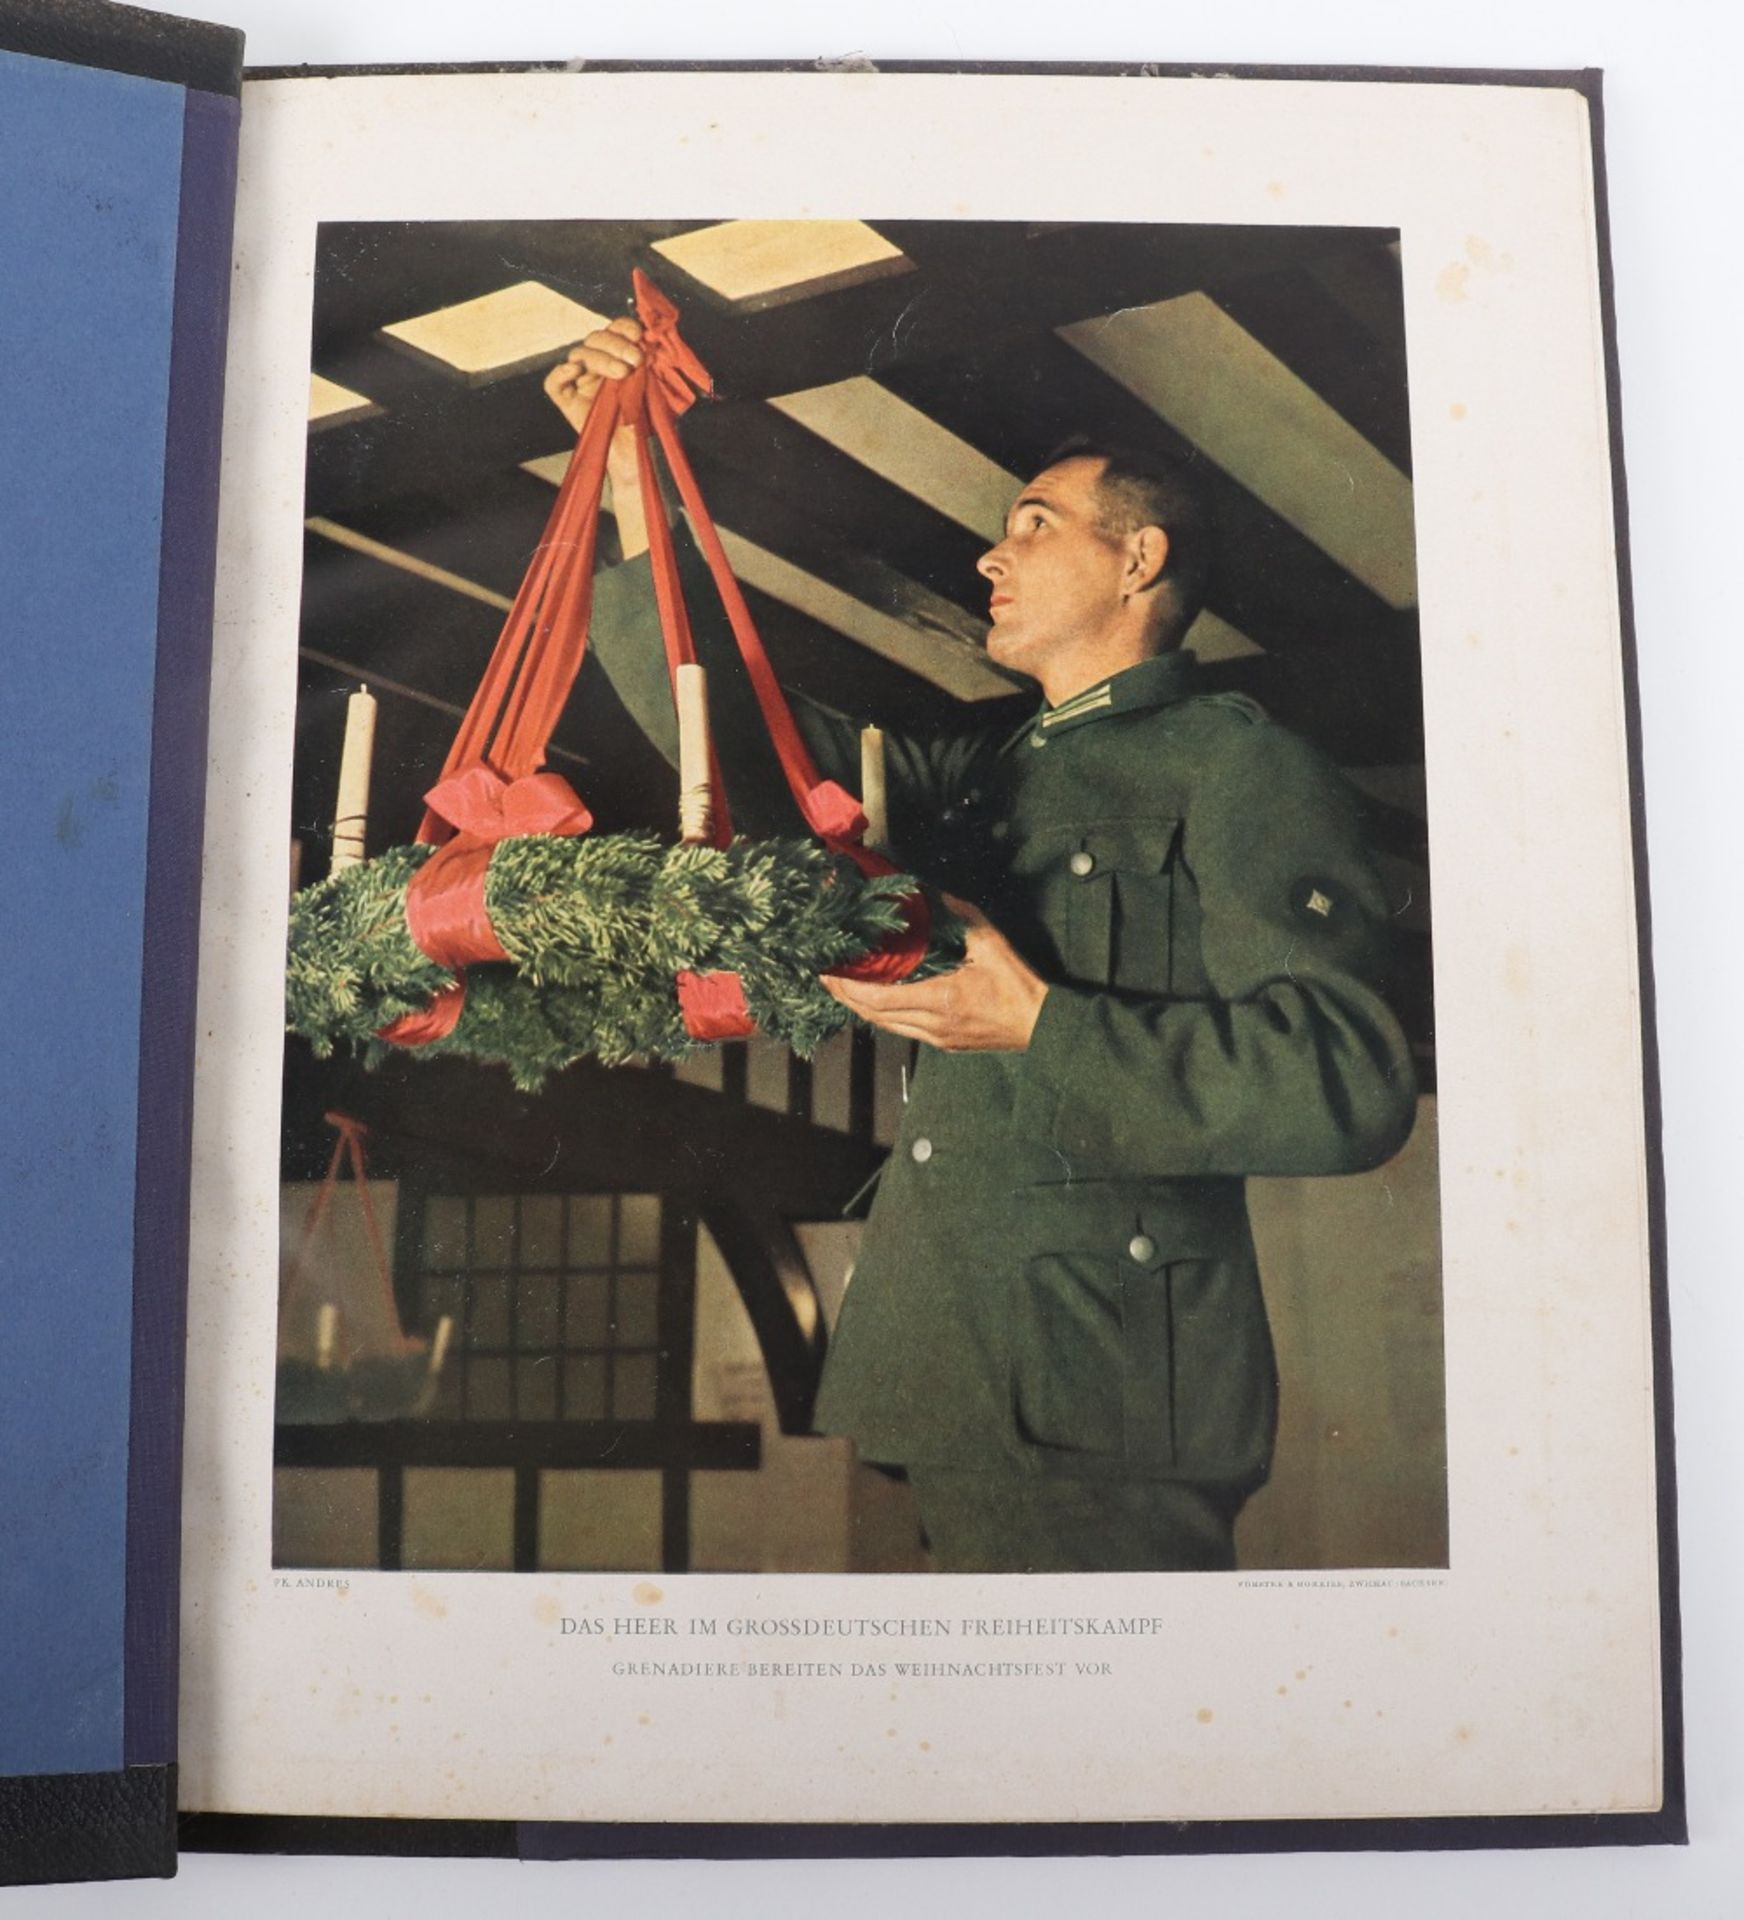 Rare WW2 German Full Colour Photo Book ‘Das Heer im Grossdeutschen Freiheitskamp’